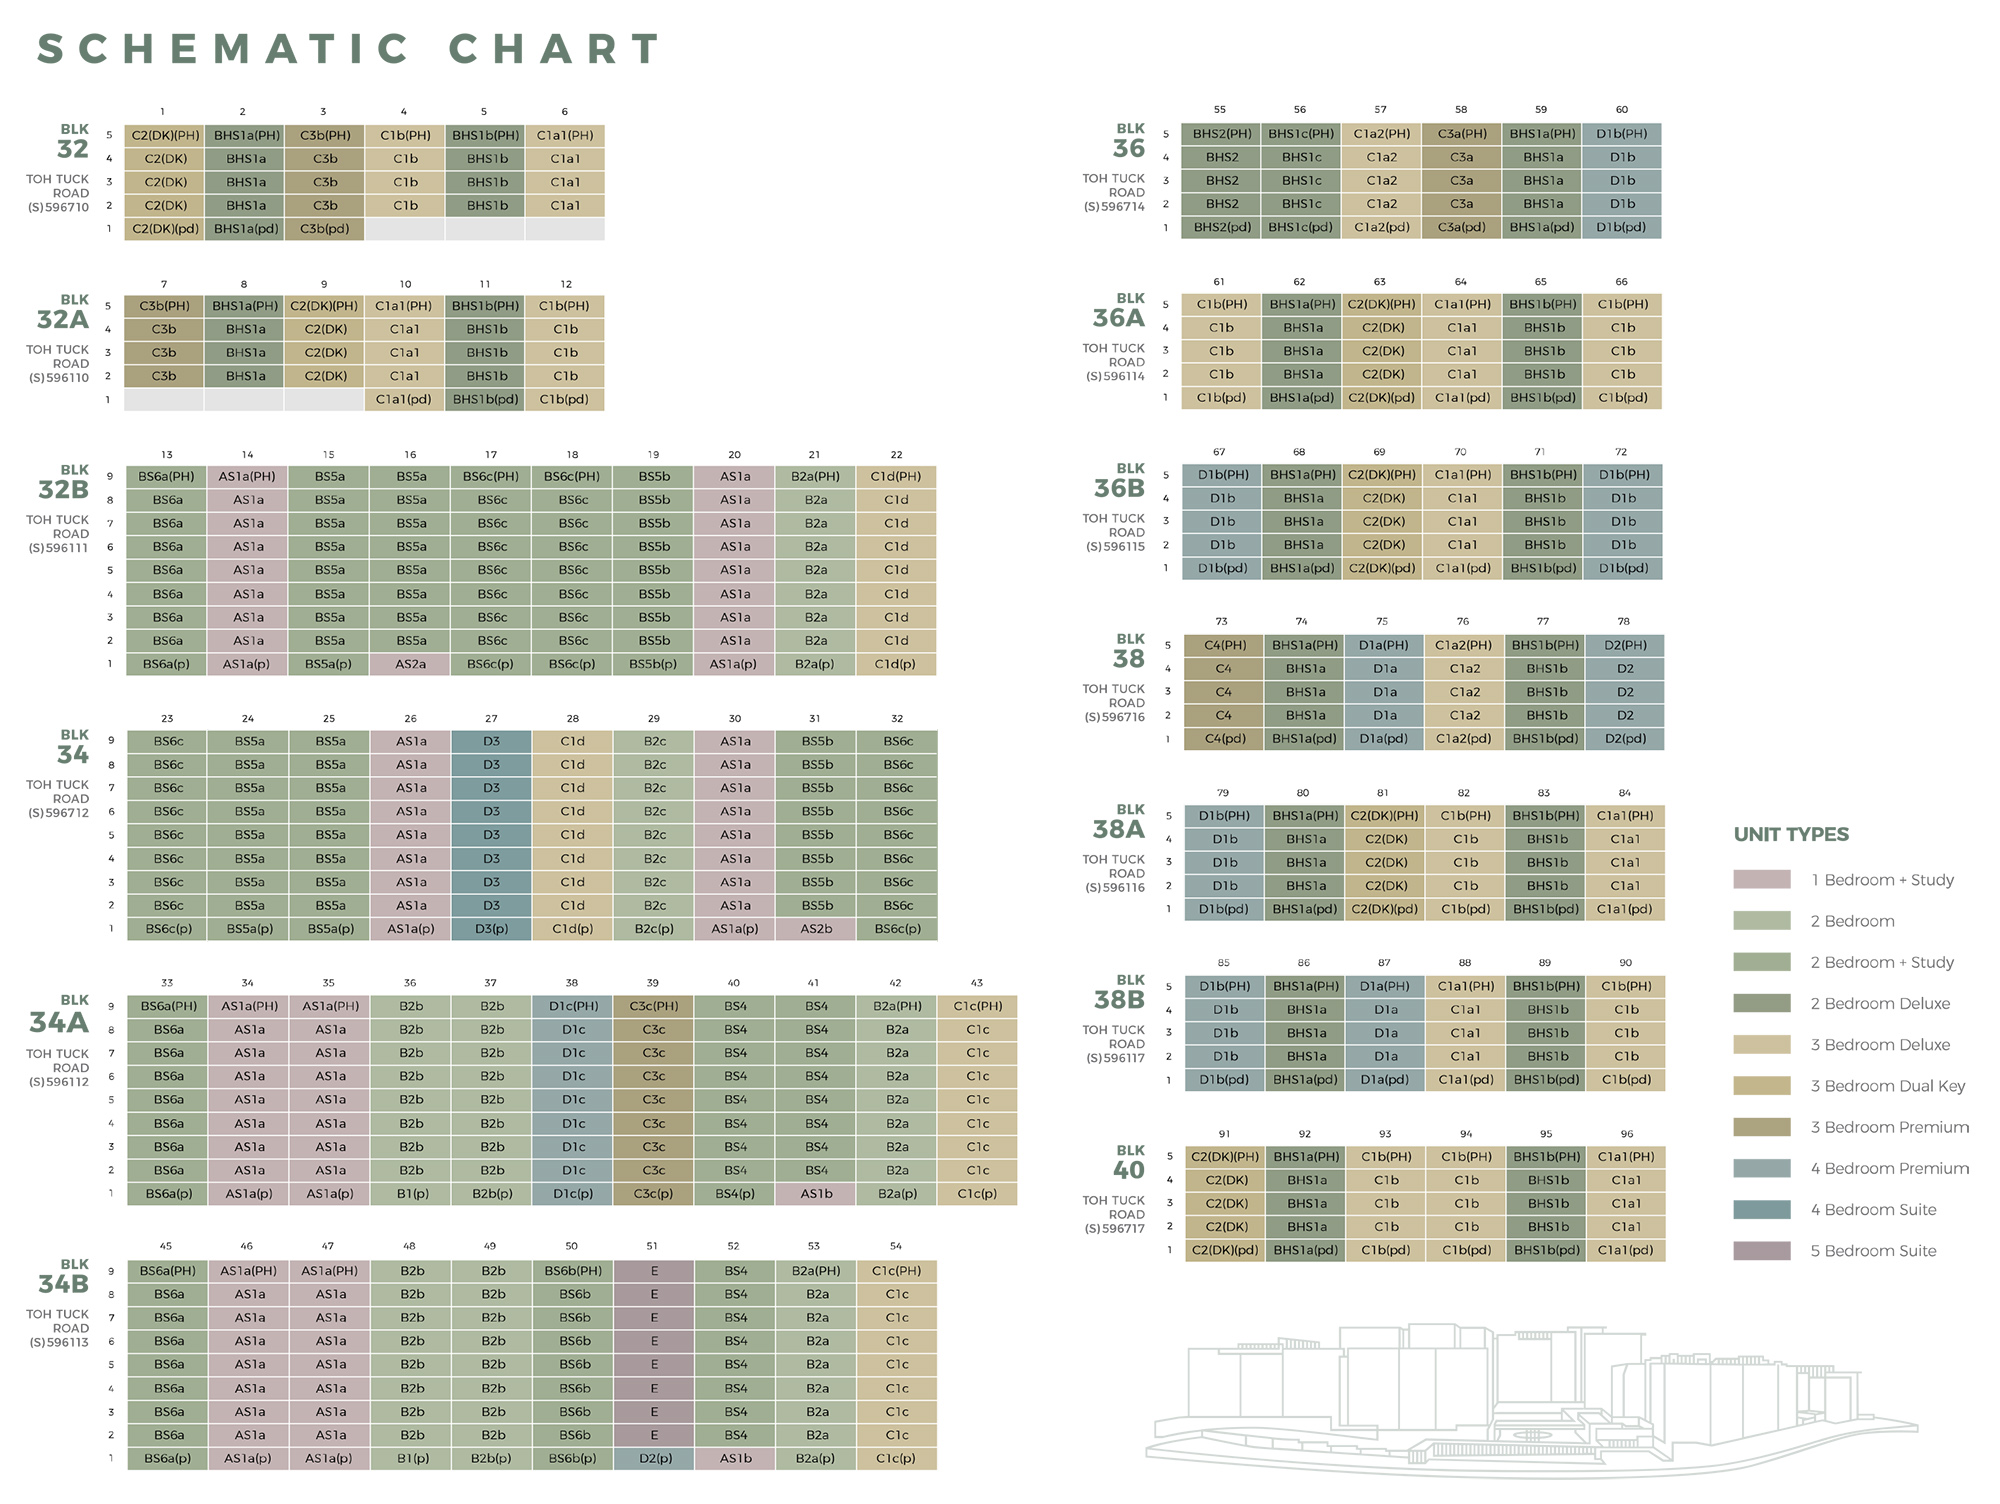 new-condo-singapore-forett-at-bukit-timah-schematic-chart